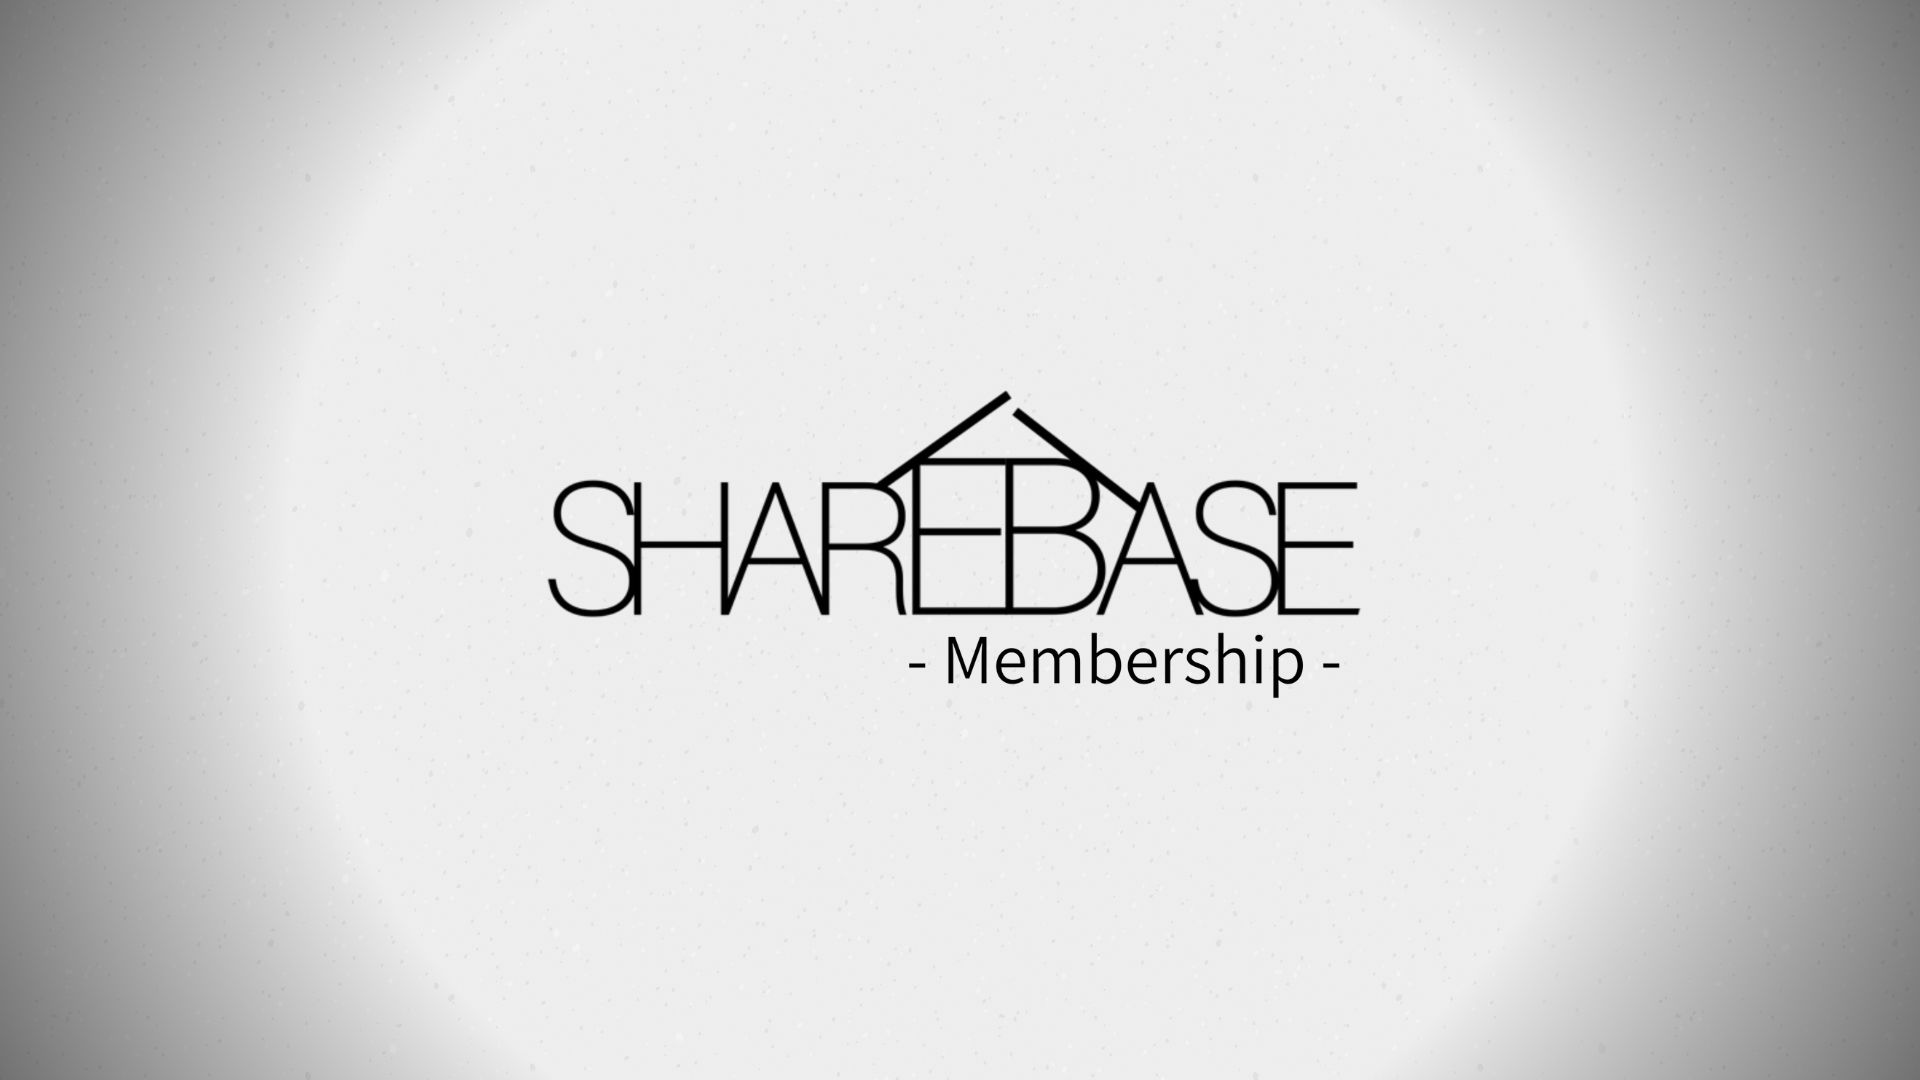 課題解決への第一歩！ SHARE BASE Membershipによる新たなチャレンジとは？